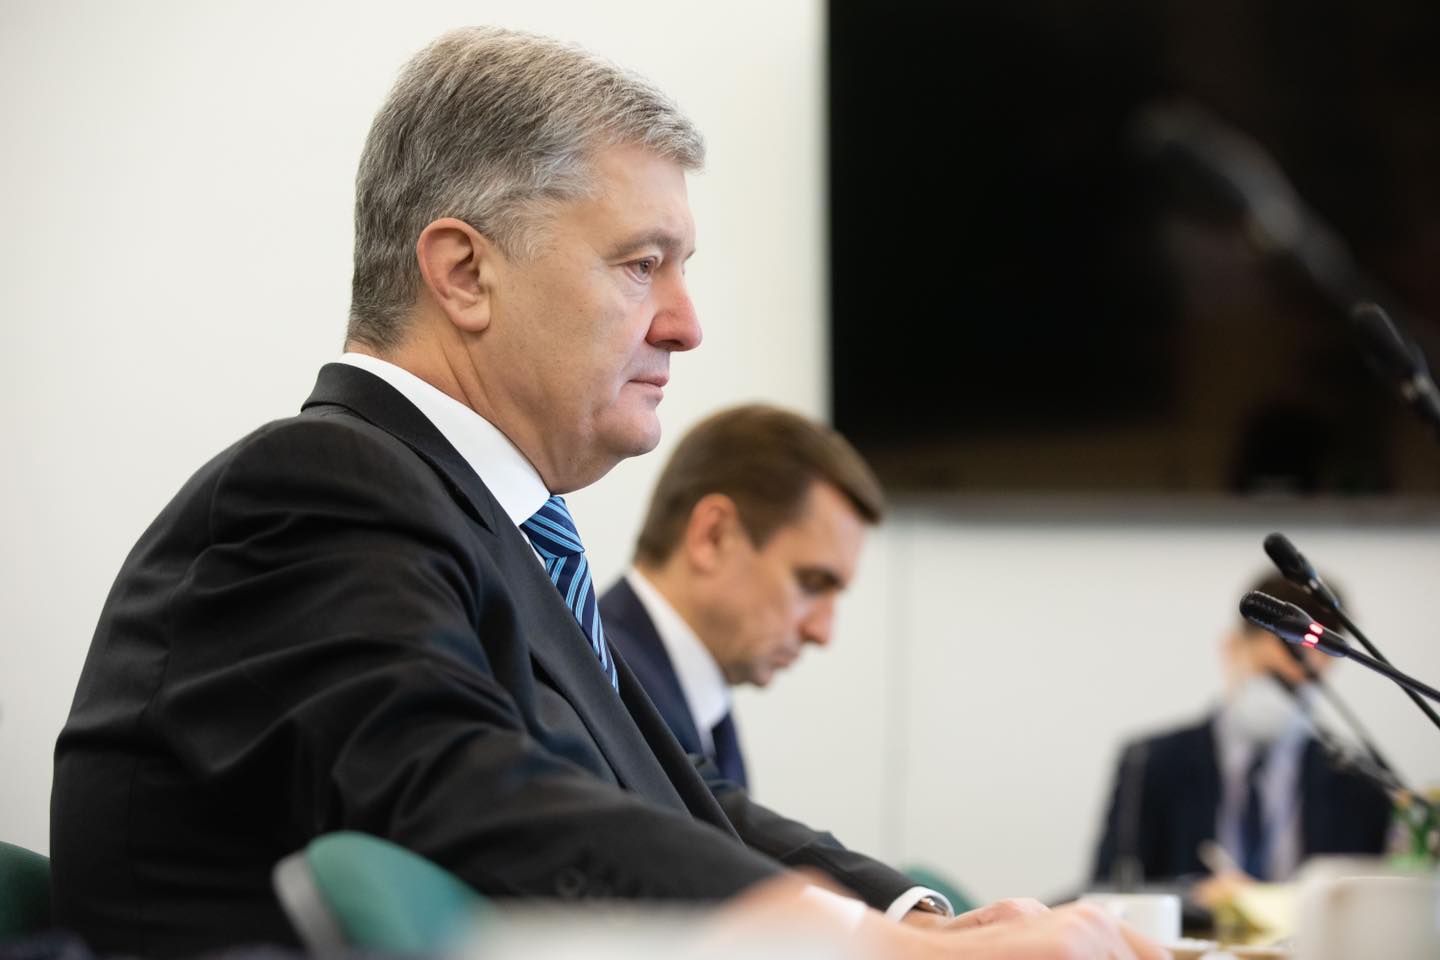 Суд не обнародовал полный текст постановления об аресте имущества Порошенко, потому что судья в отпуске — адвокат